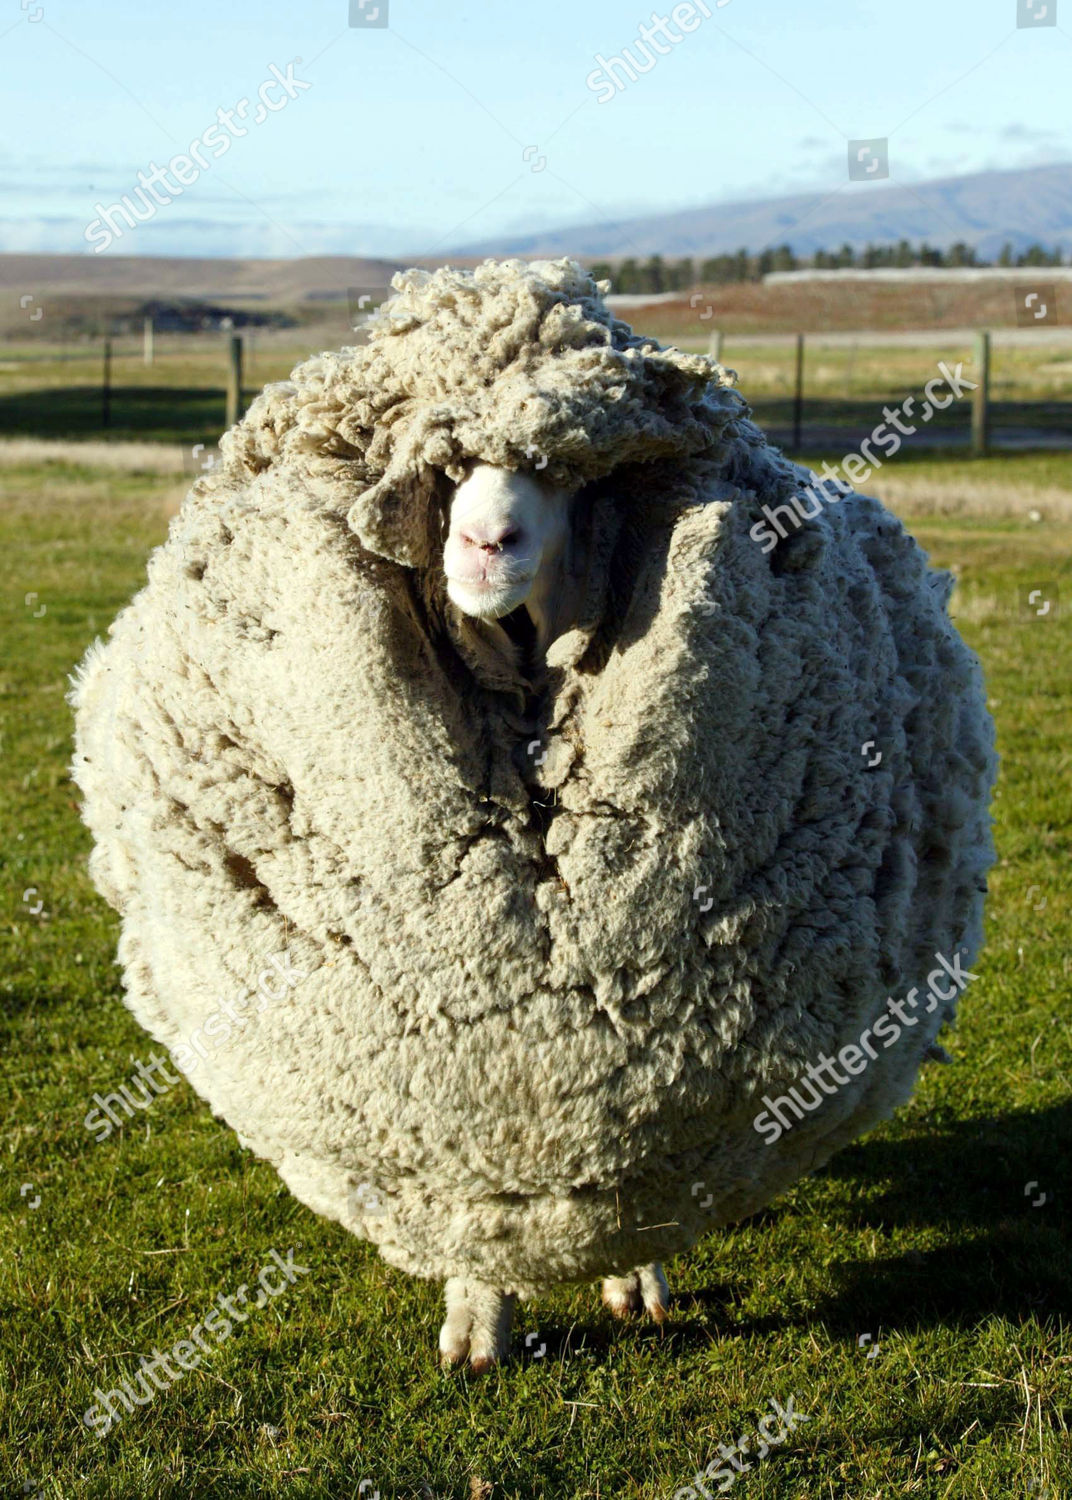 shrek the sheep